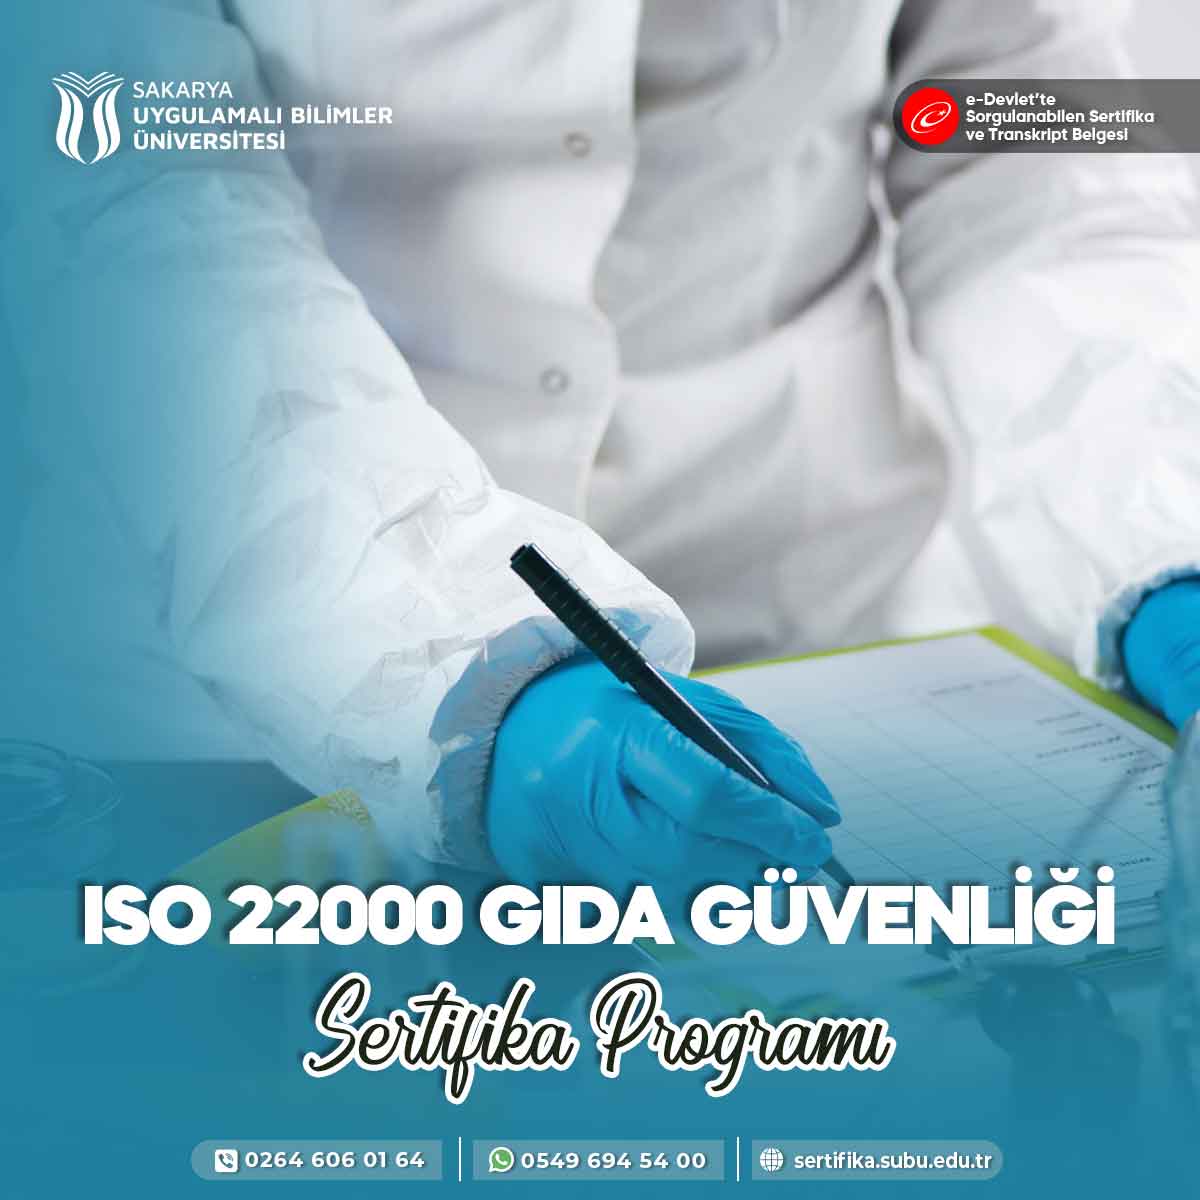 ISO 22000 Gıda Güvenliği Sertifika Programı